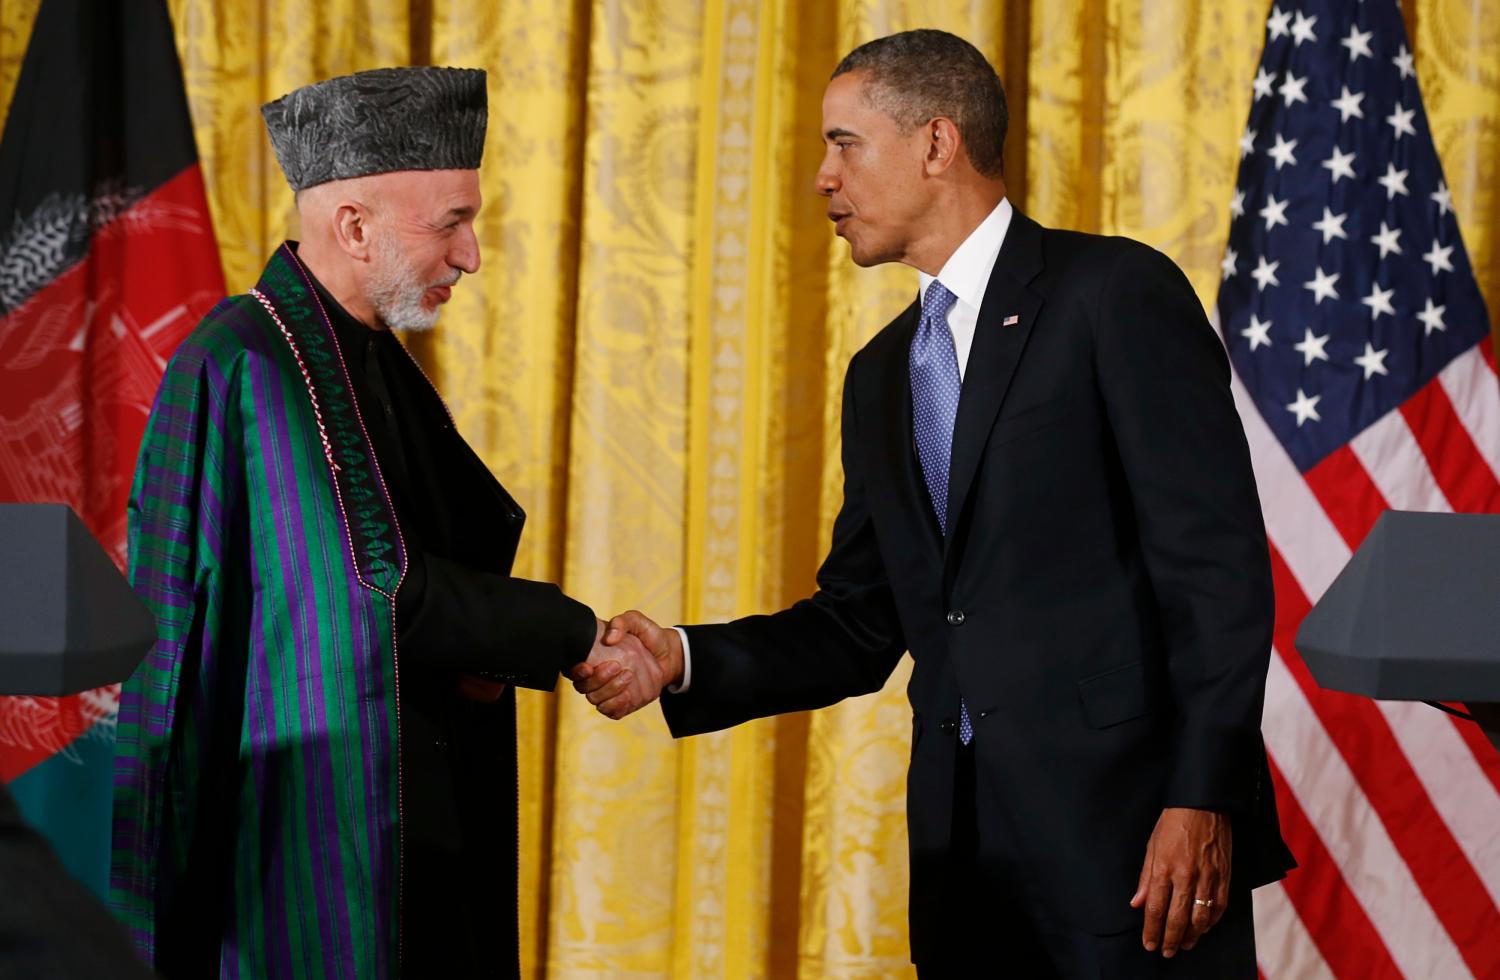 Karzai and Obama